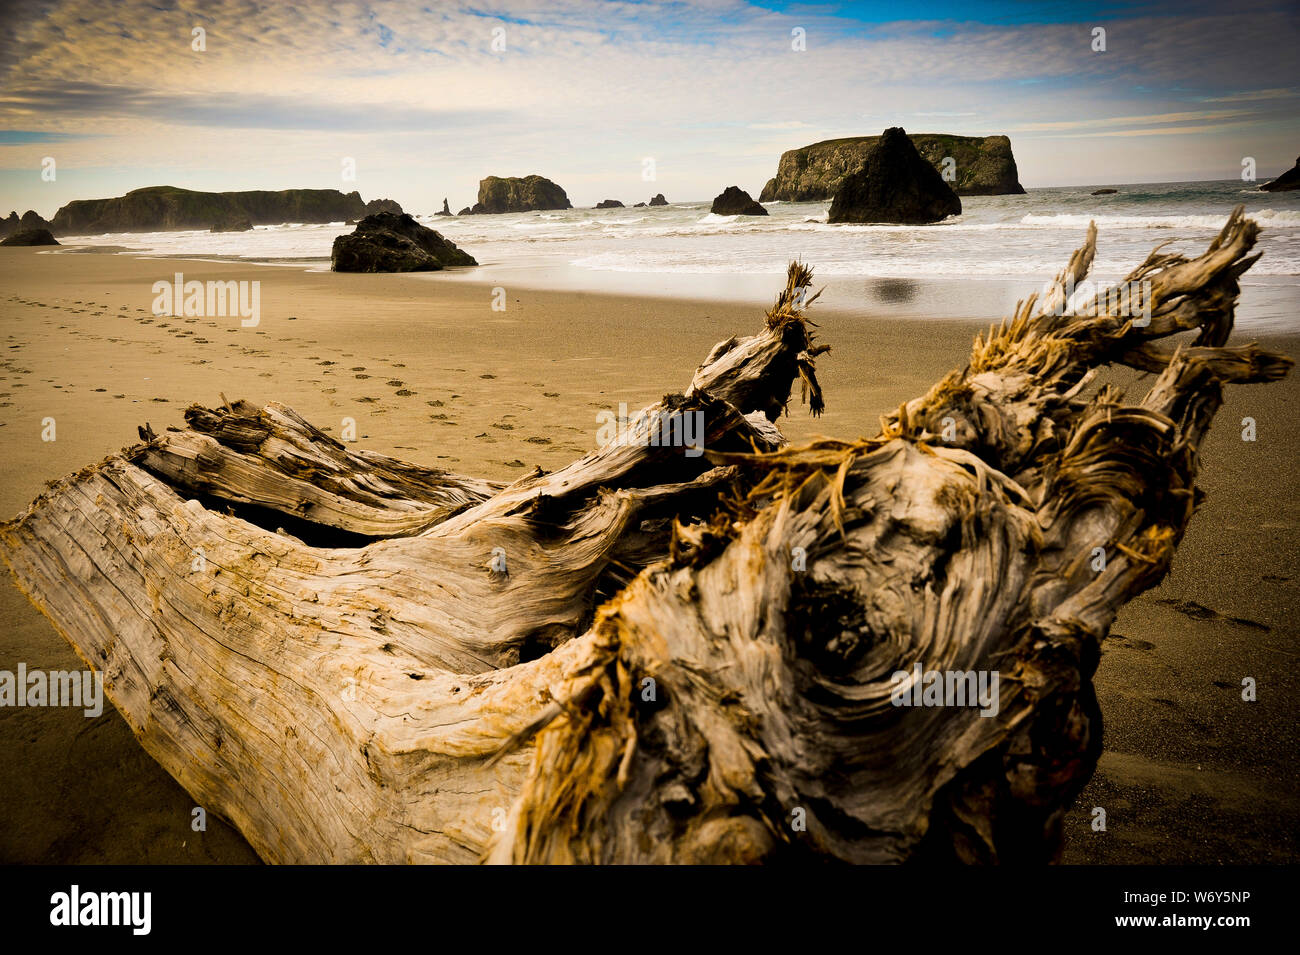 Versteinertes Holz, Footprints und Treibholz entlang dem Ufer von einem Sandstrand Stockfoto